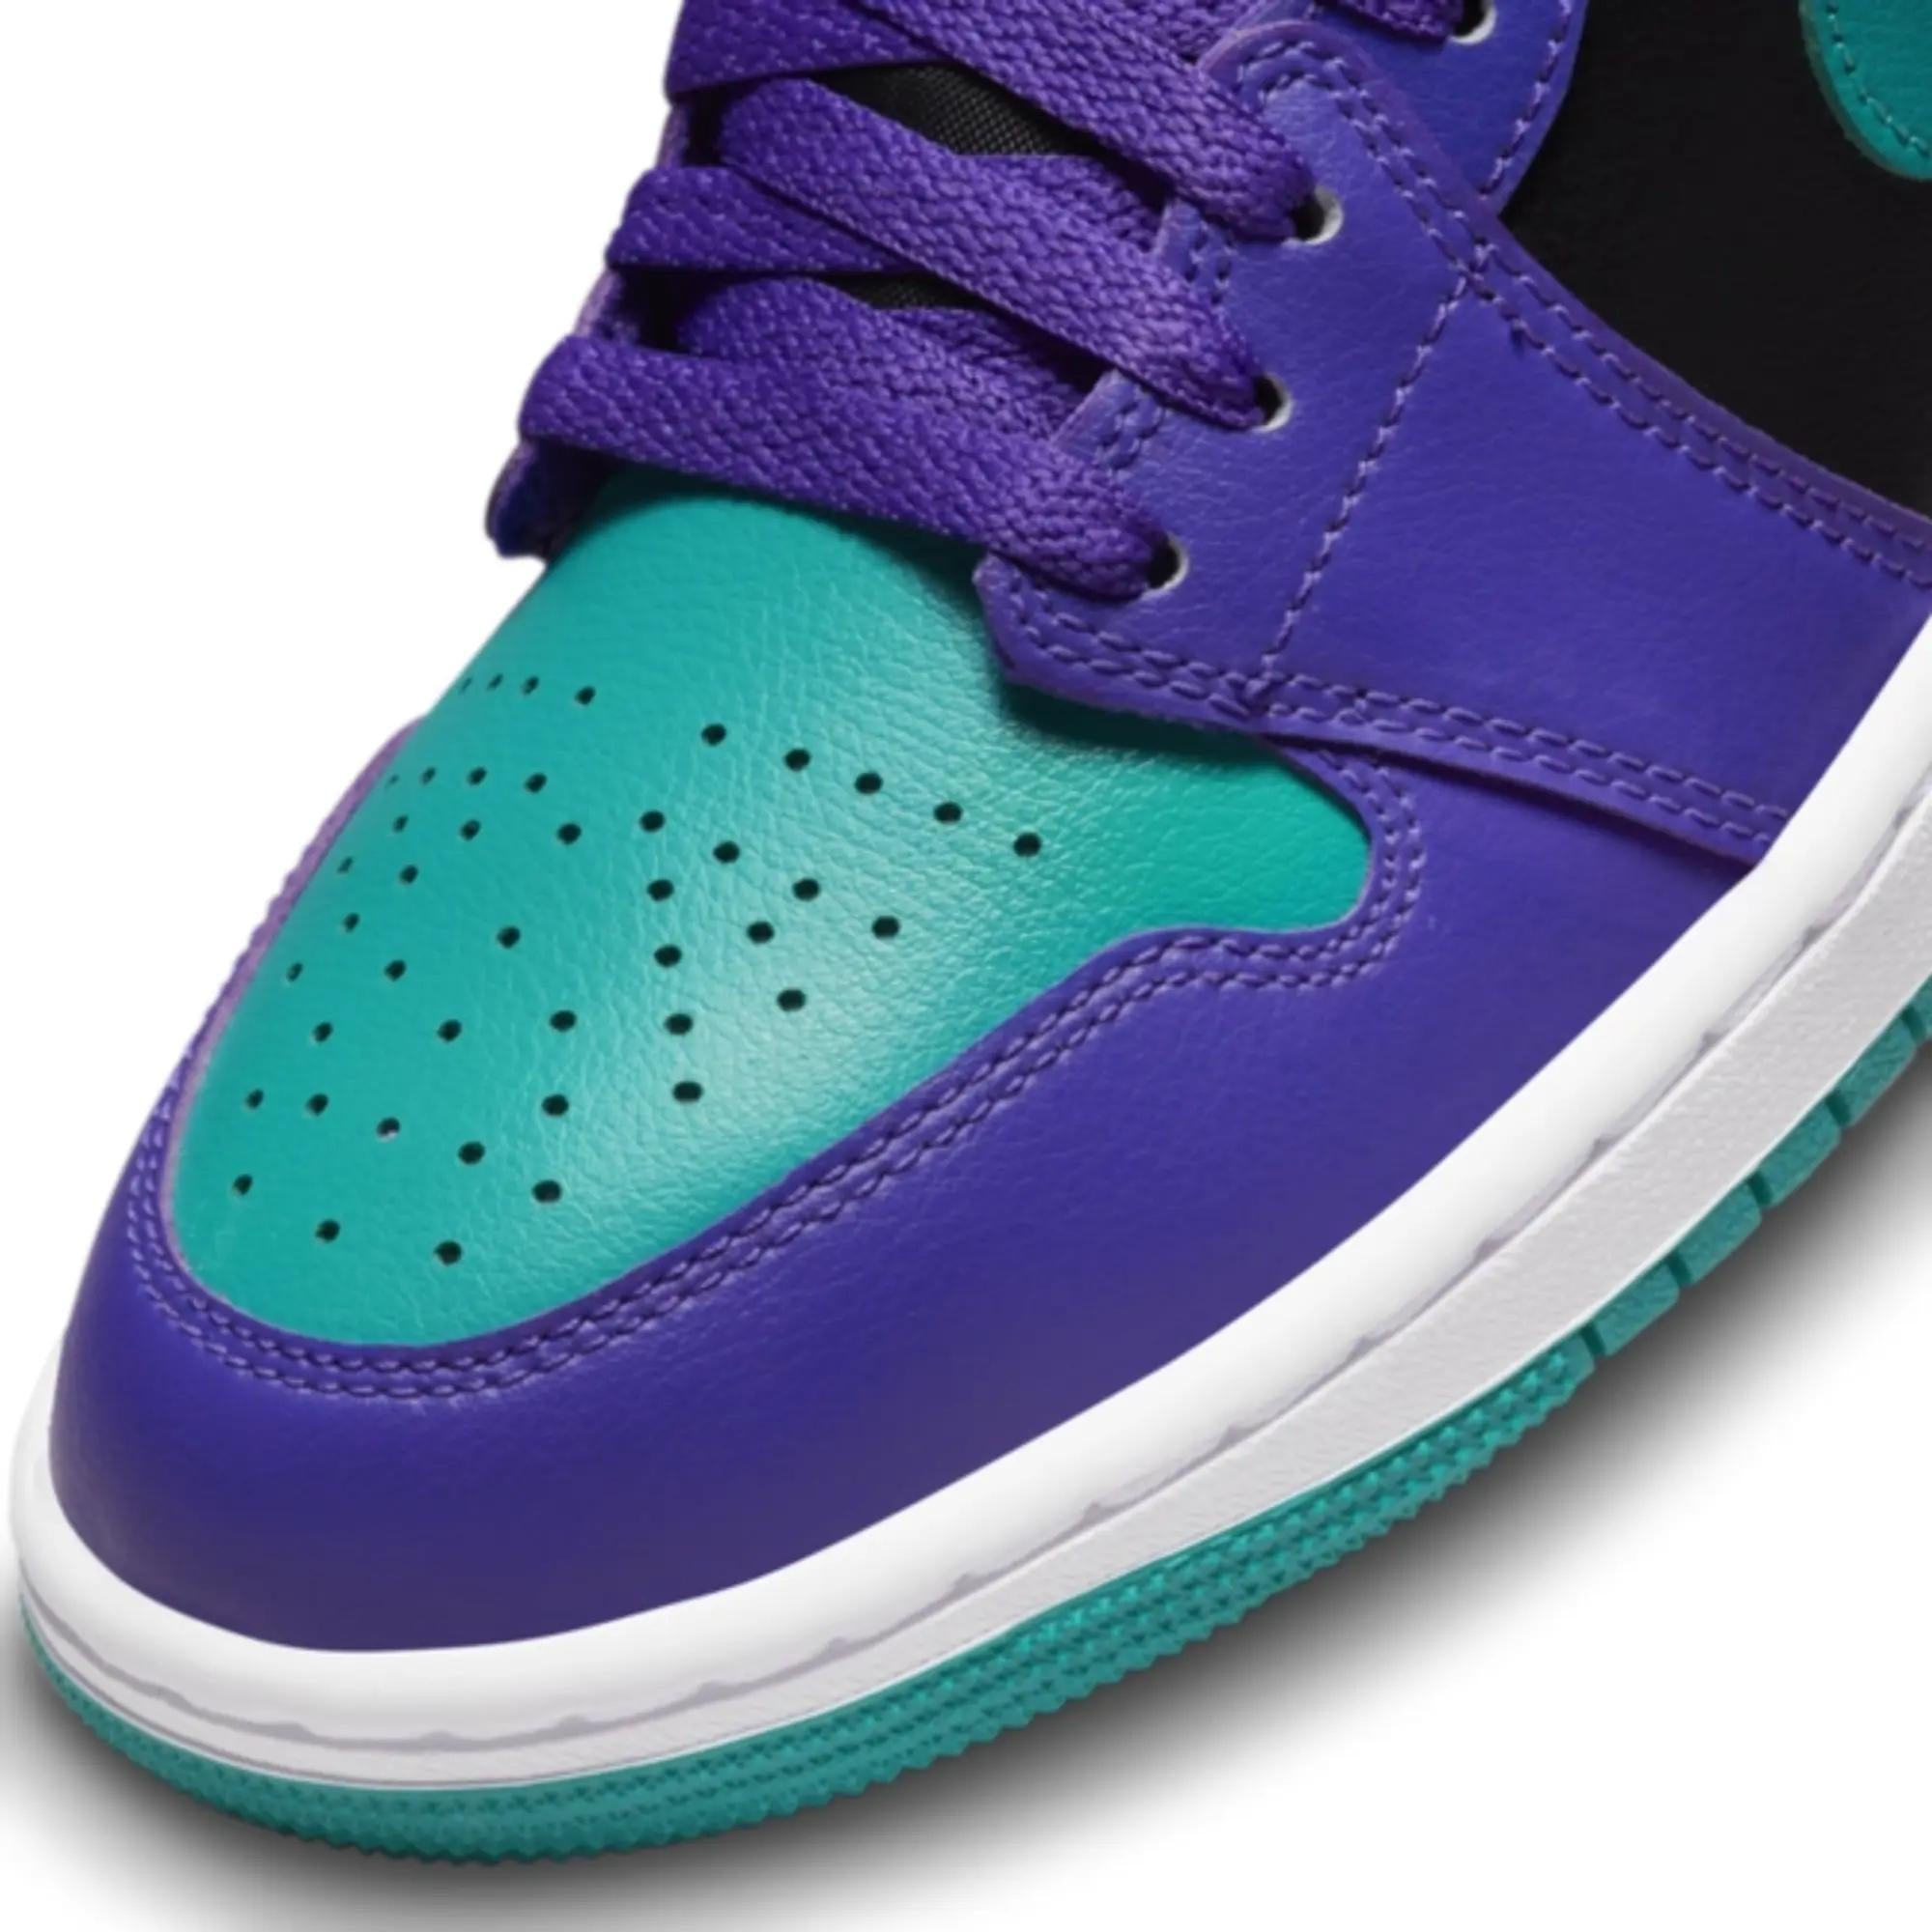 Air Jordan 1 Mid ’Black Grape’ Sneakers